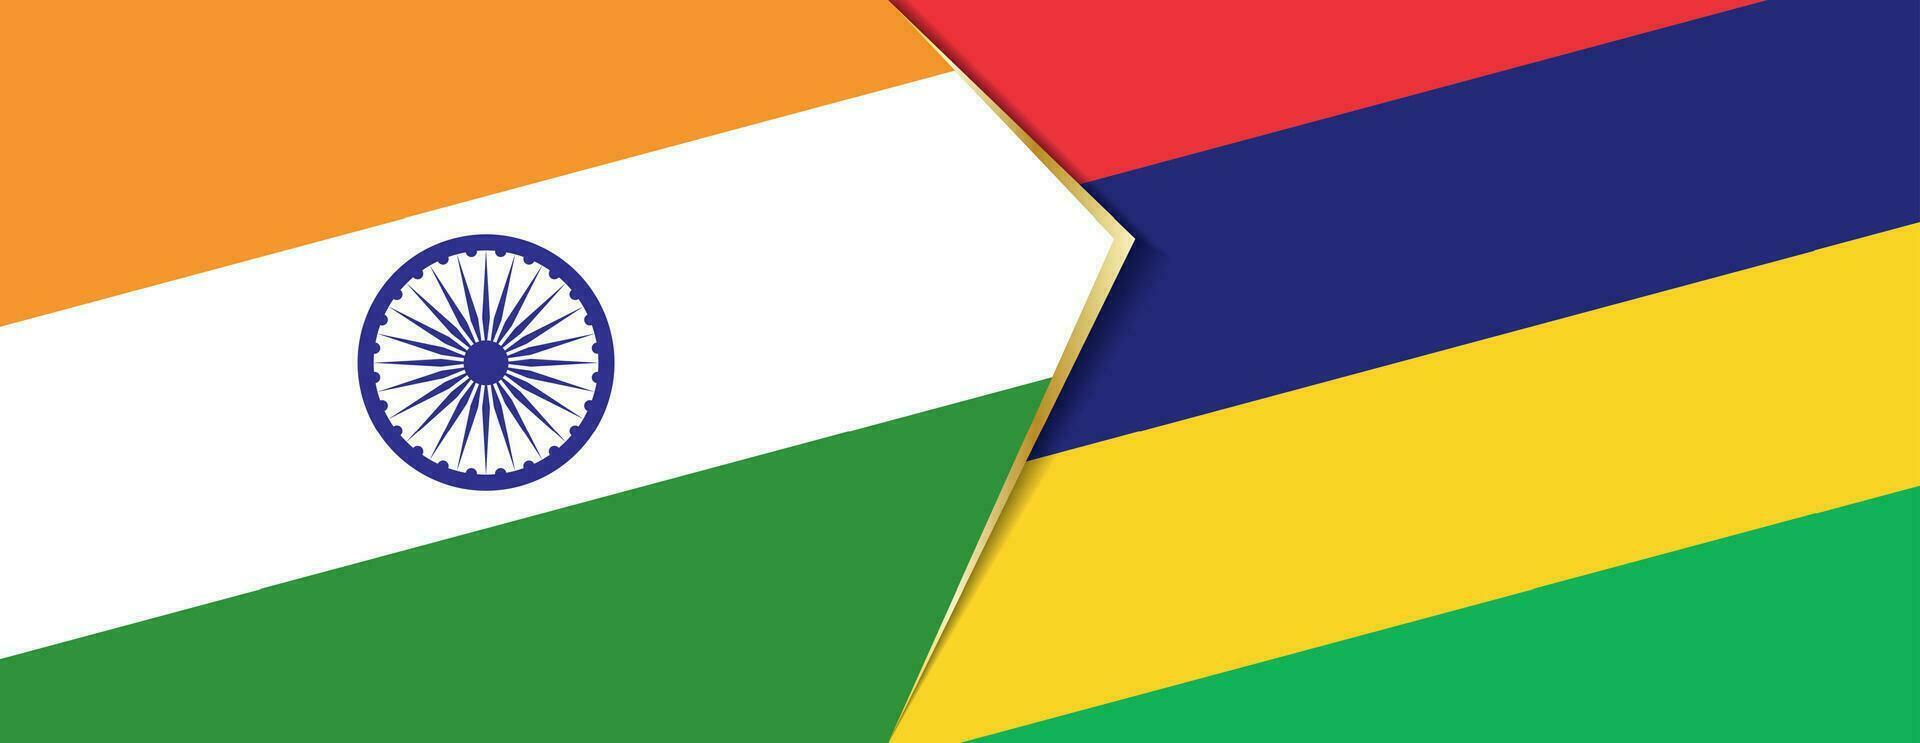 India y Mauricio banderas, dos vector banderas